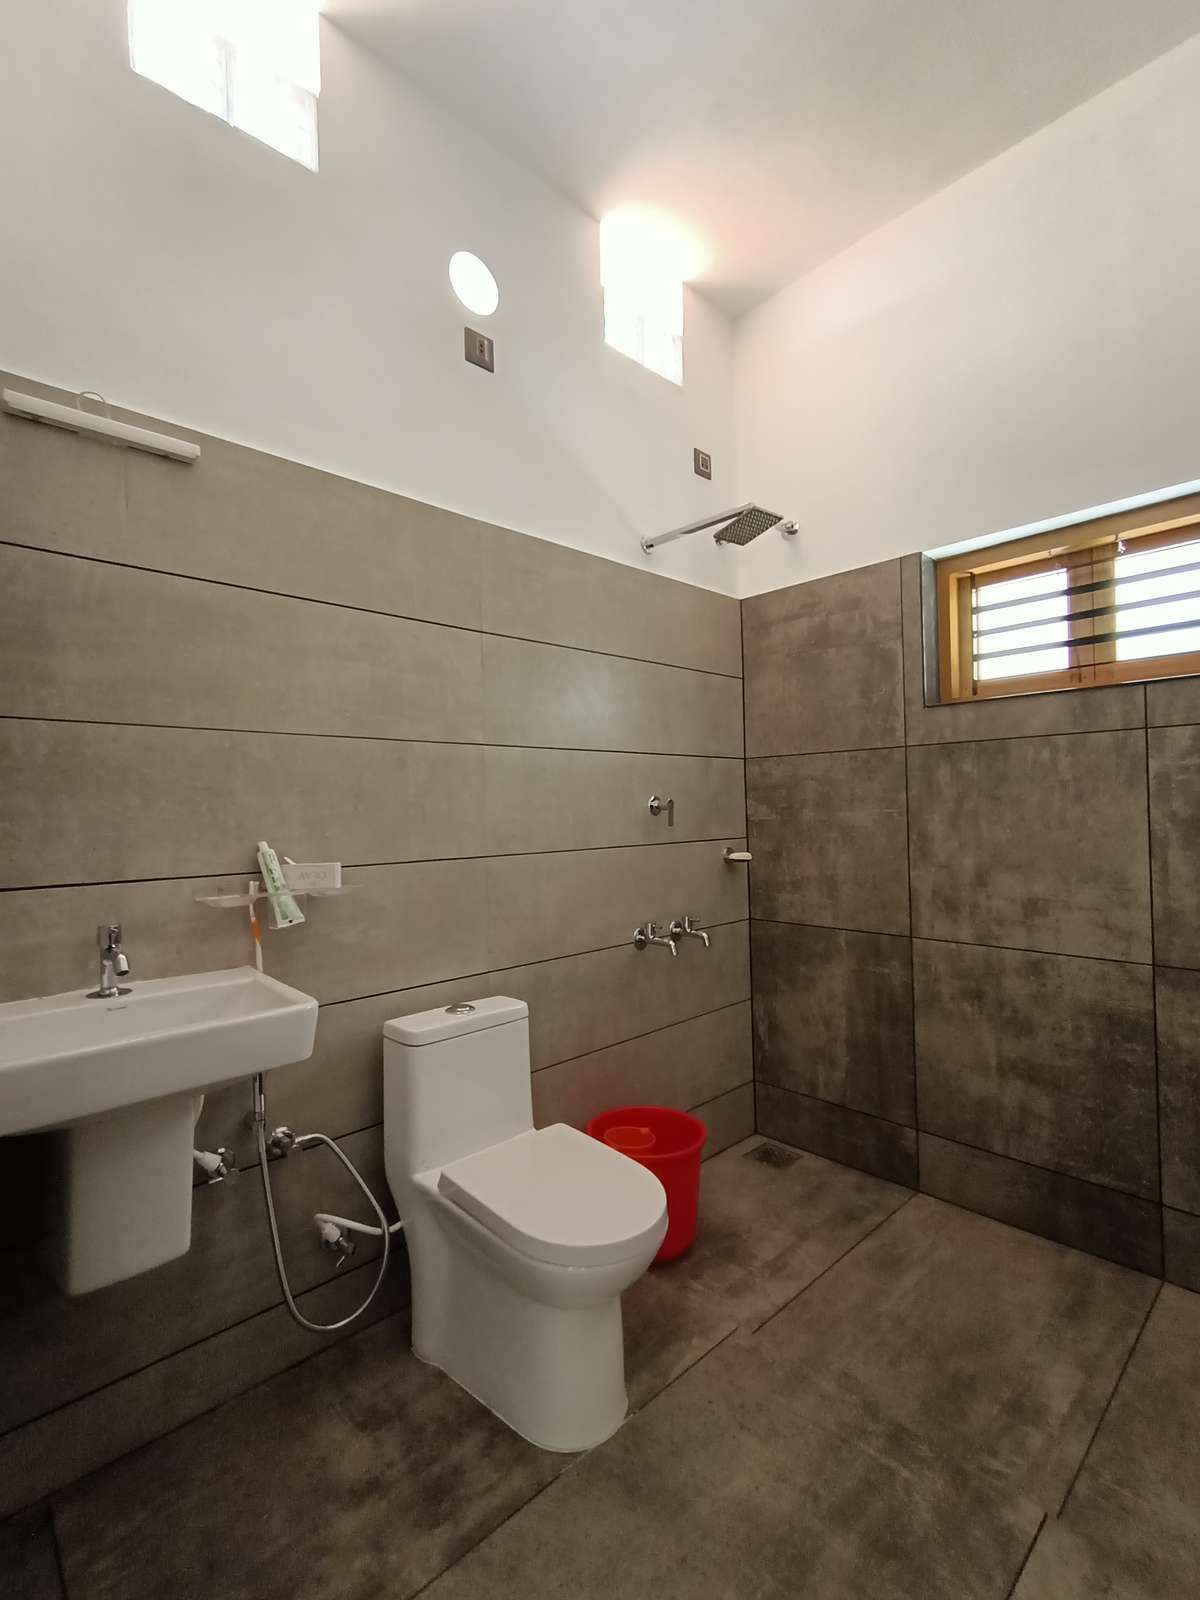 Bathroom designs, Cement textured tiles @Kasargod